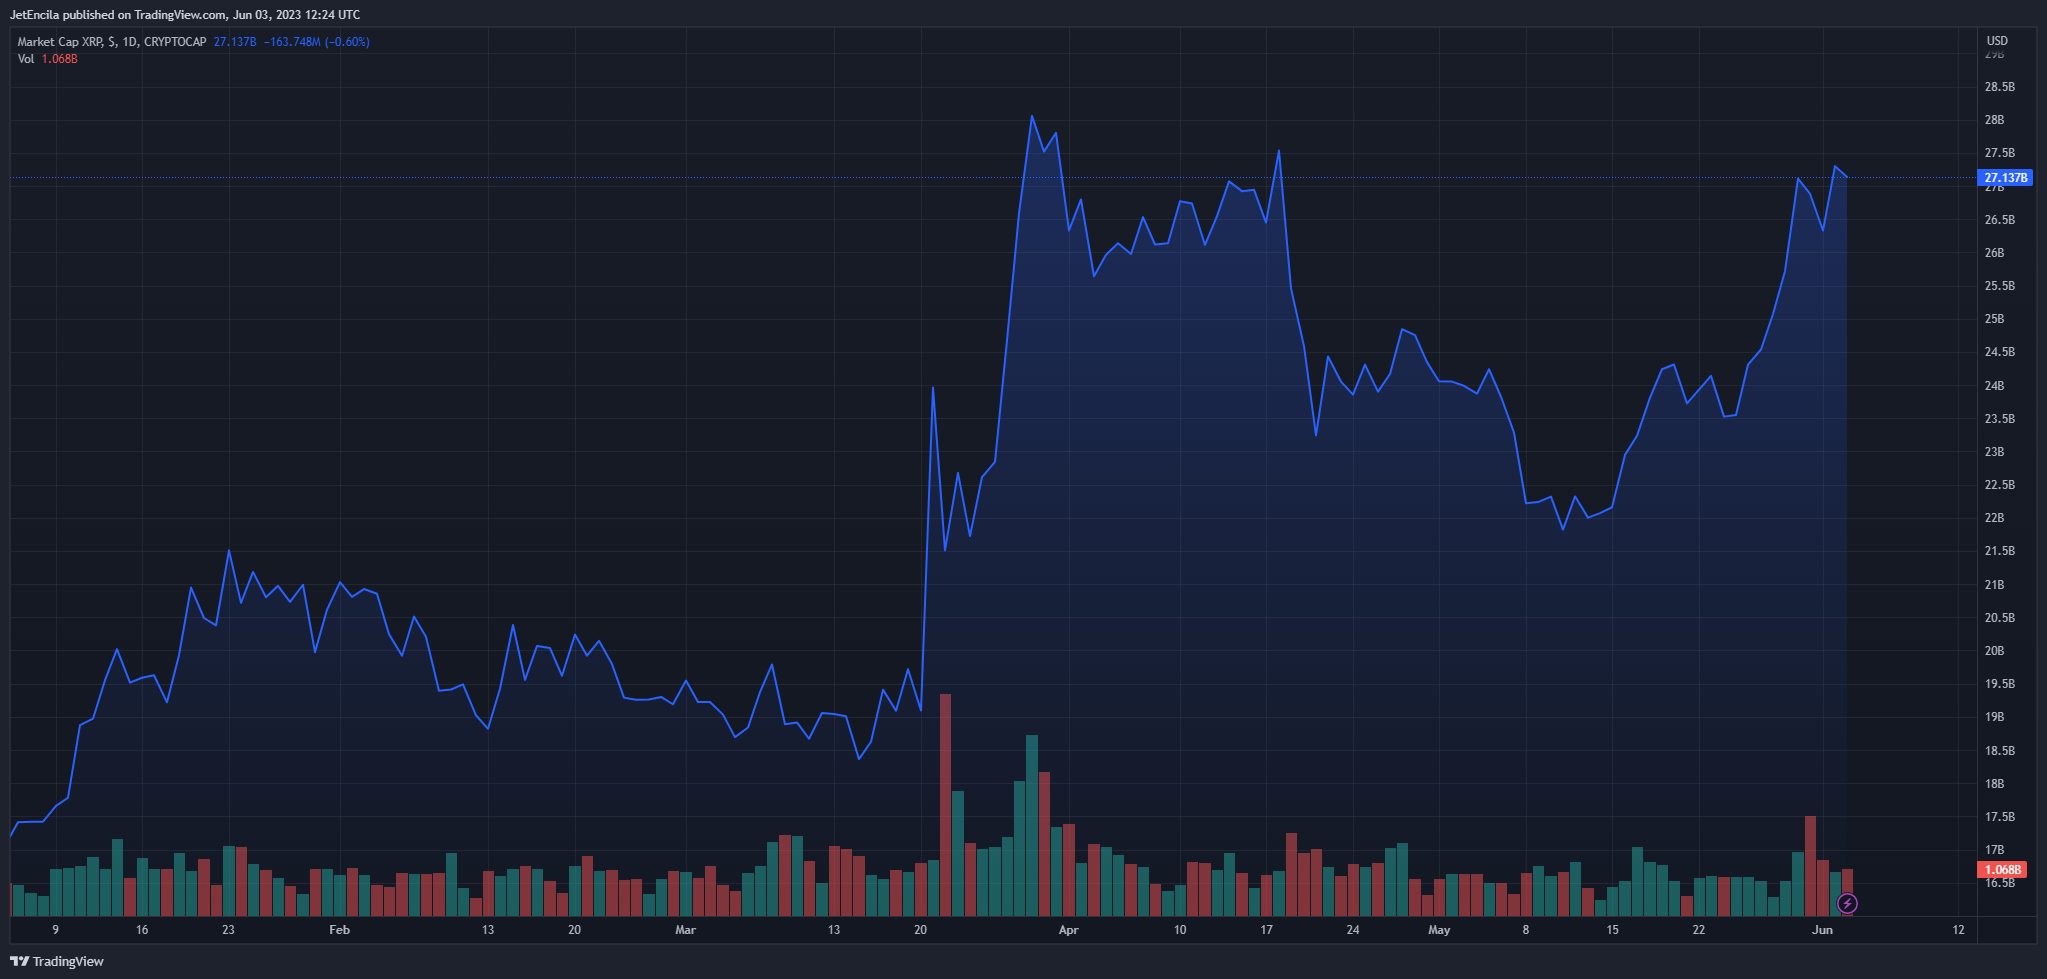 Tổng vốn hóa thị trường của XRP cao hơn một chút so với mức 27 tỷ đô la trên biểu đồ cuối tuần: TradingView.com